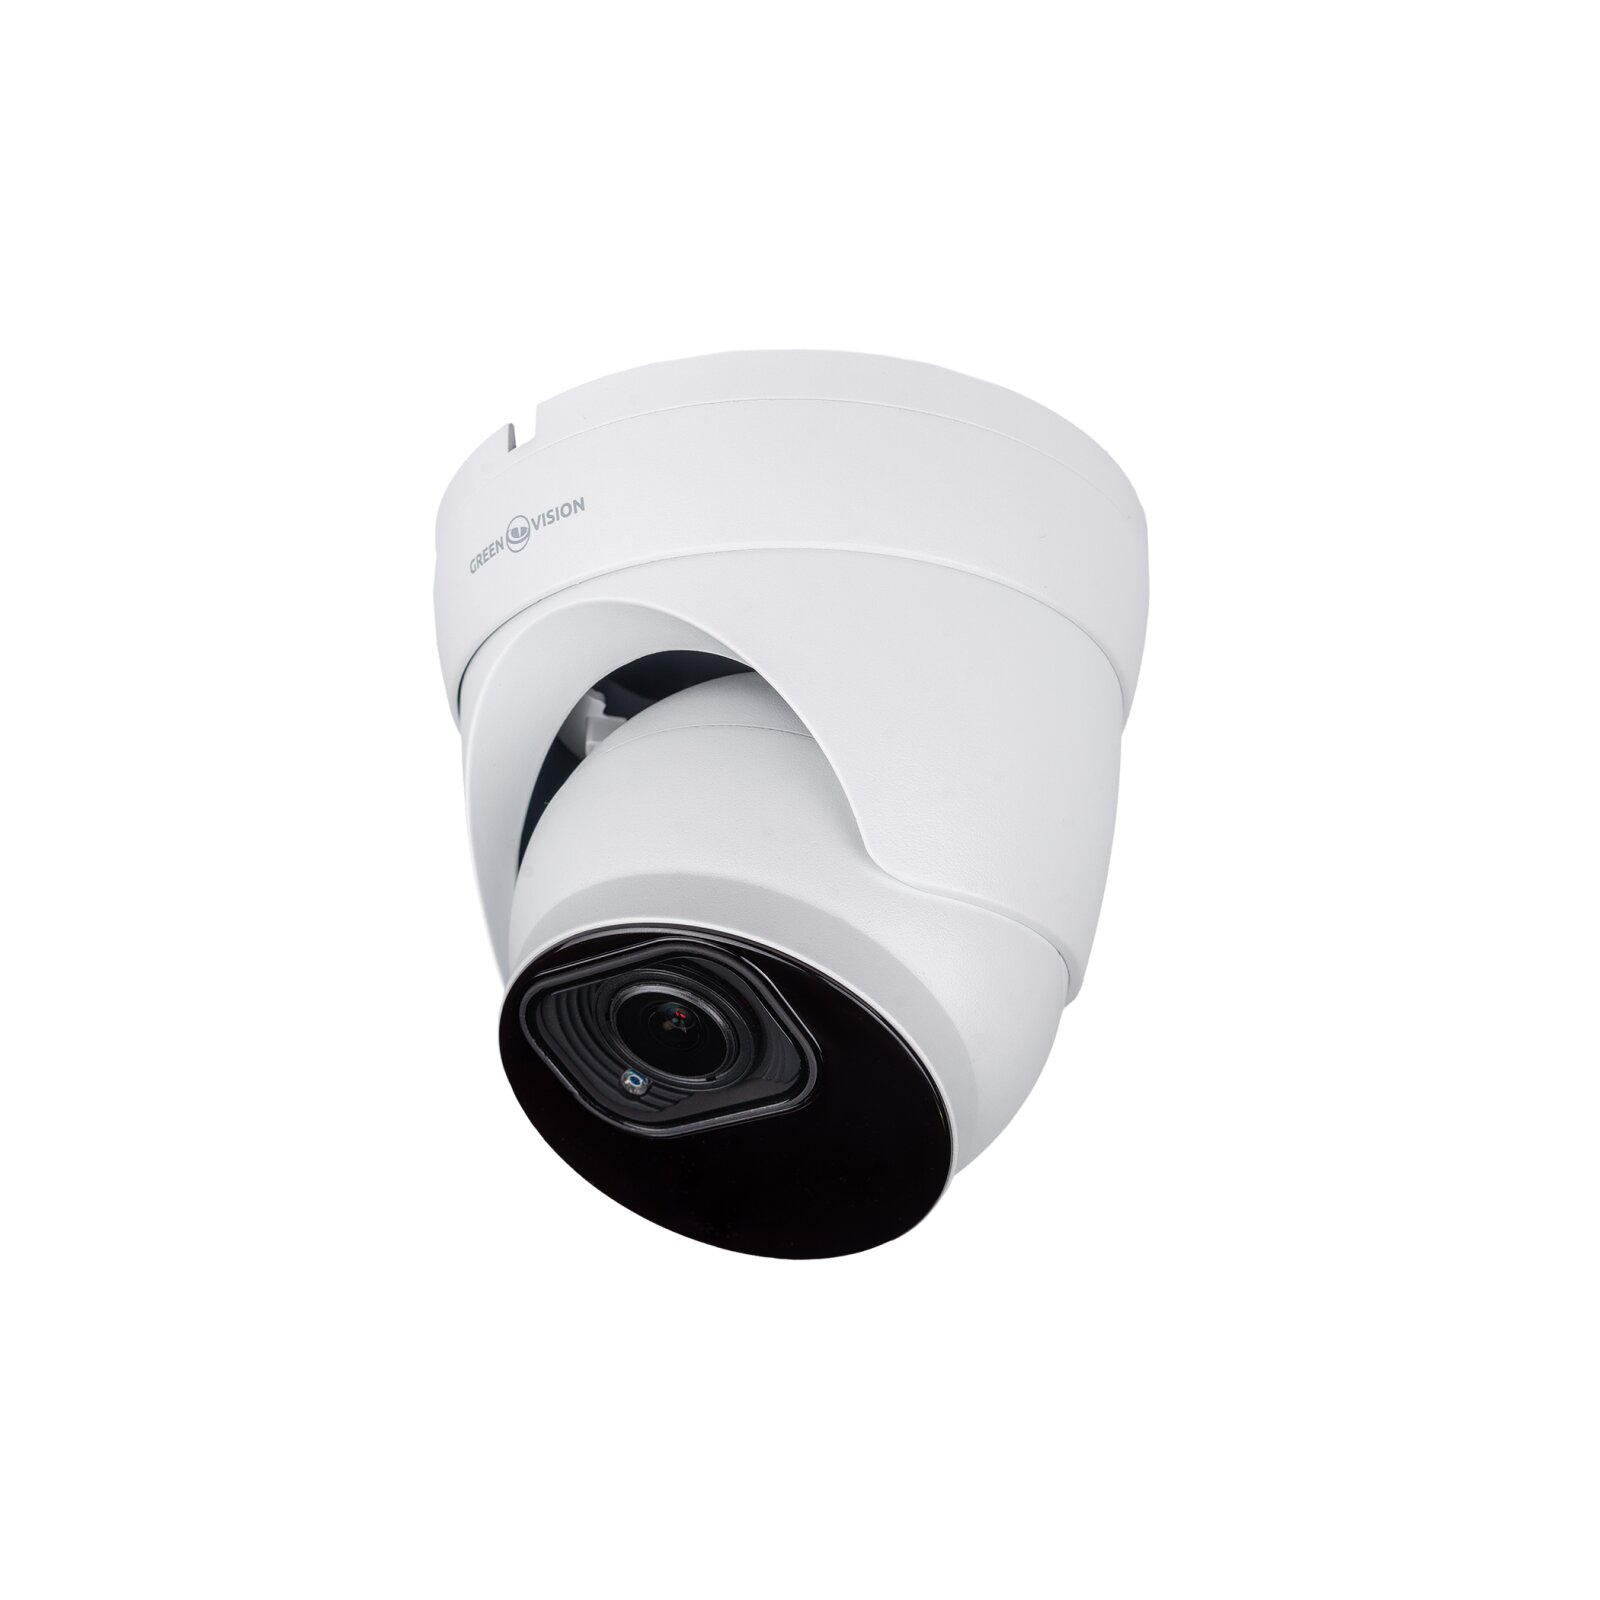 Камера видеонаблюдения Greenvision GV-188-IP-IF-DOS50-30 VMA (Ultra AI)